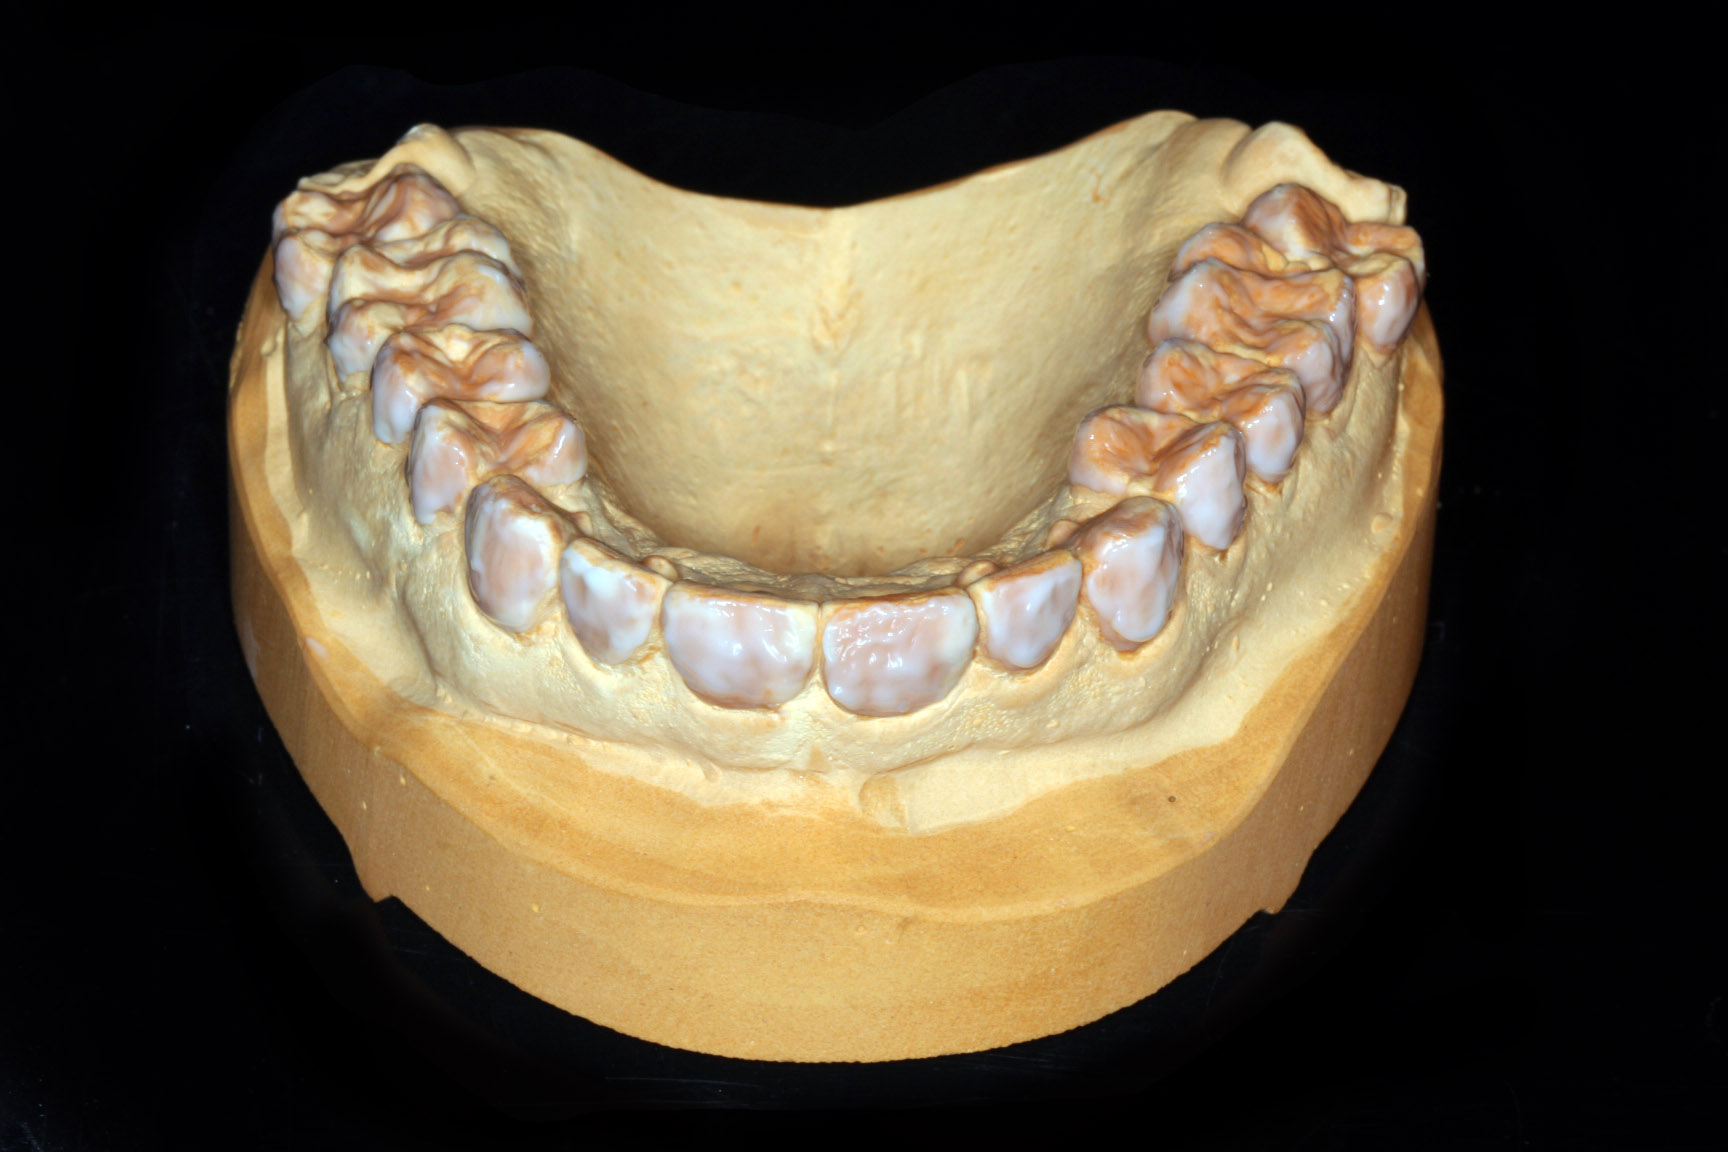 Oberkiefermodell mit vorbereiteten Zahnflächen